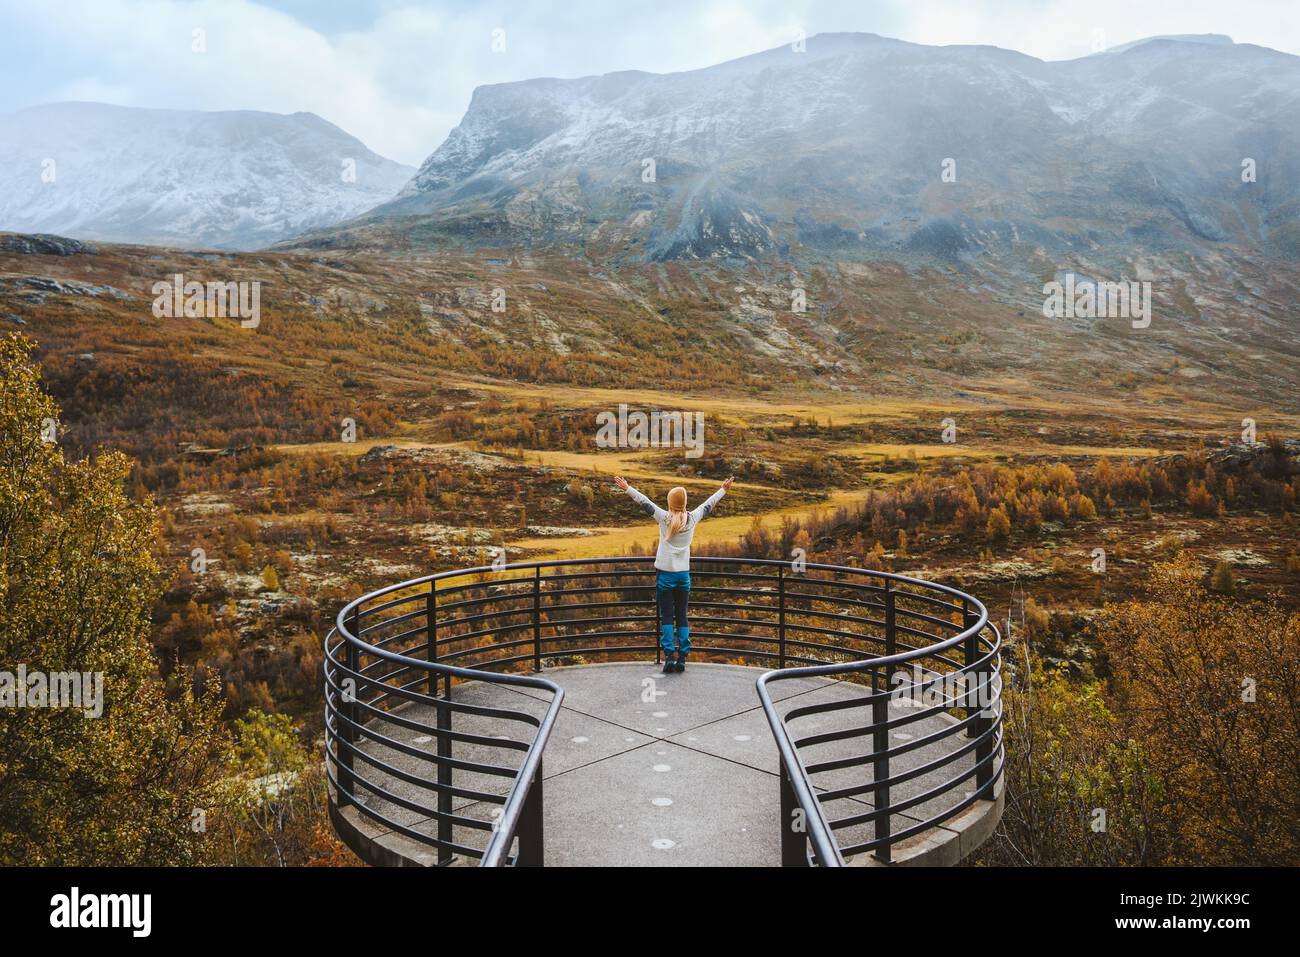 Frau genießen Herbstlandschaft auf Vegaskjelet Aussichtspunkt Reise im Freien Luftaufnahme Wald und Berge Tourist hob Hände Sightseeing in Norwegen Stockfoto